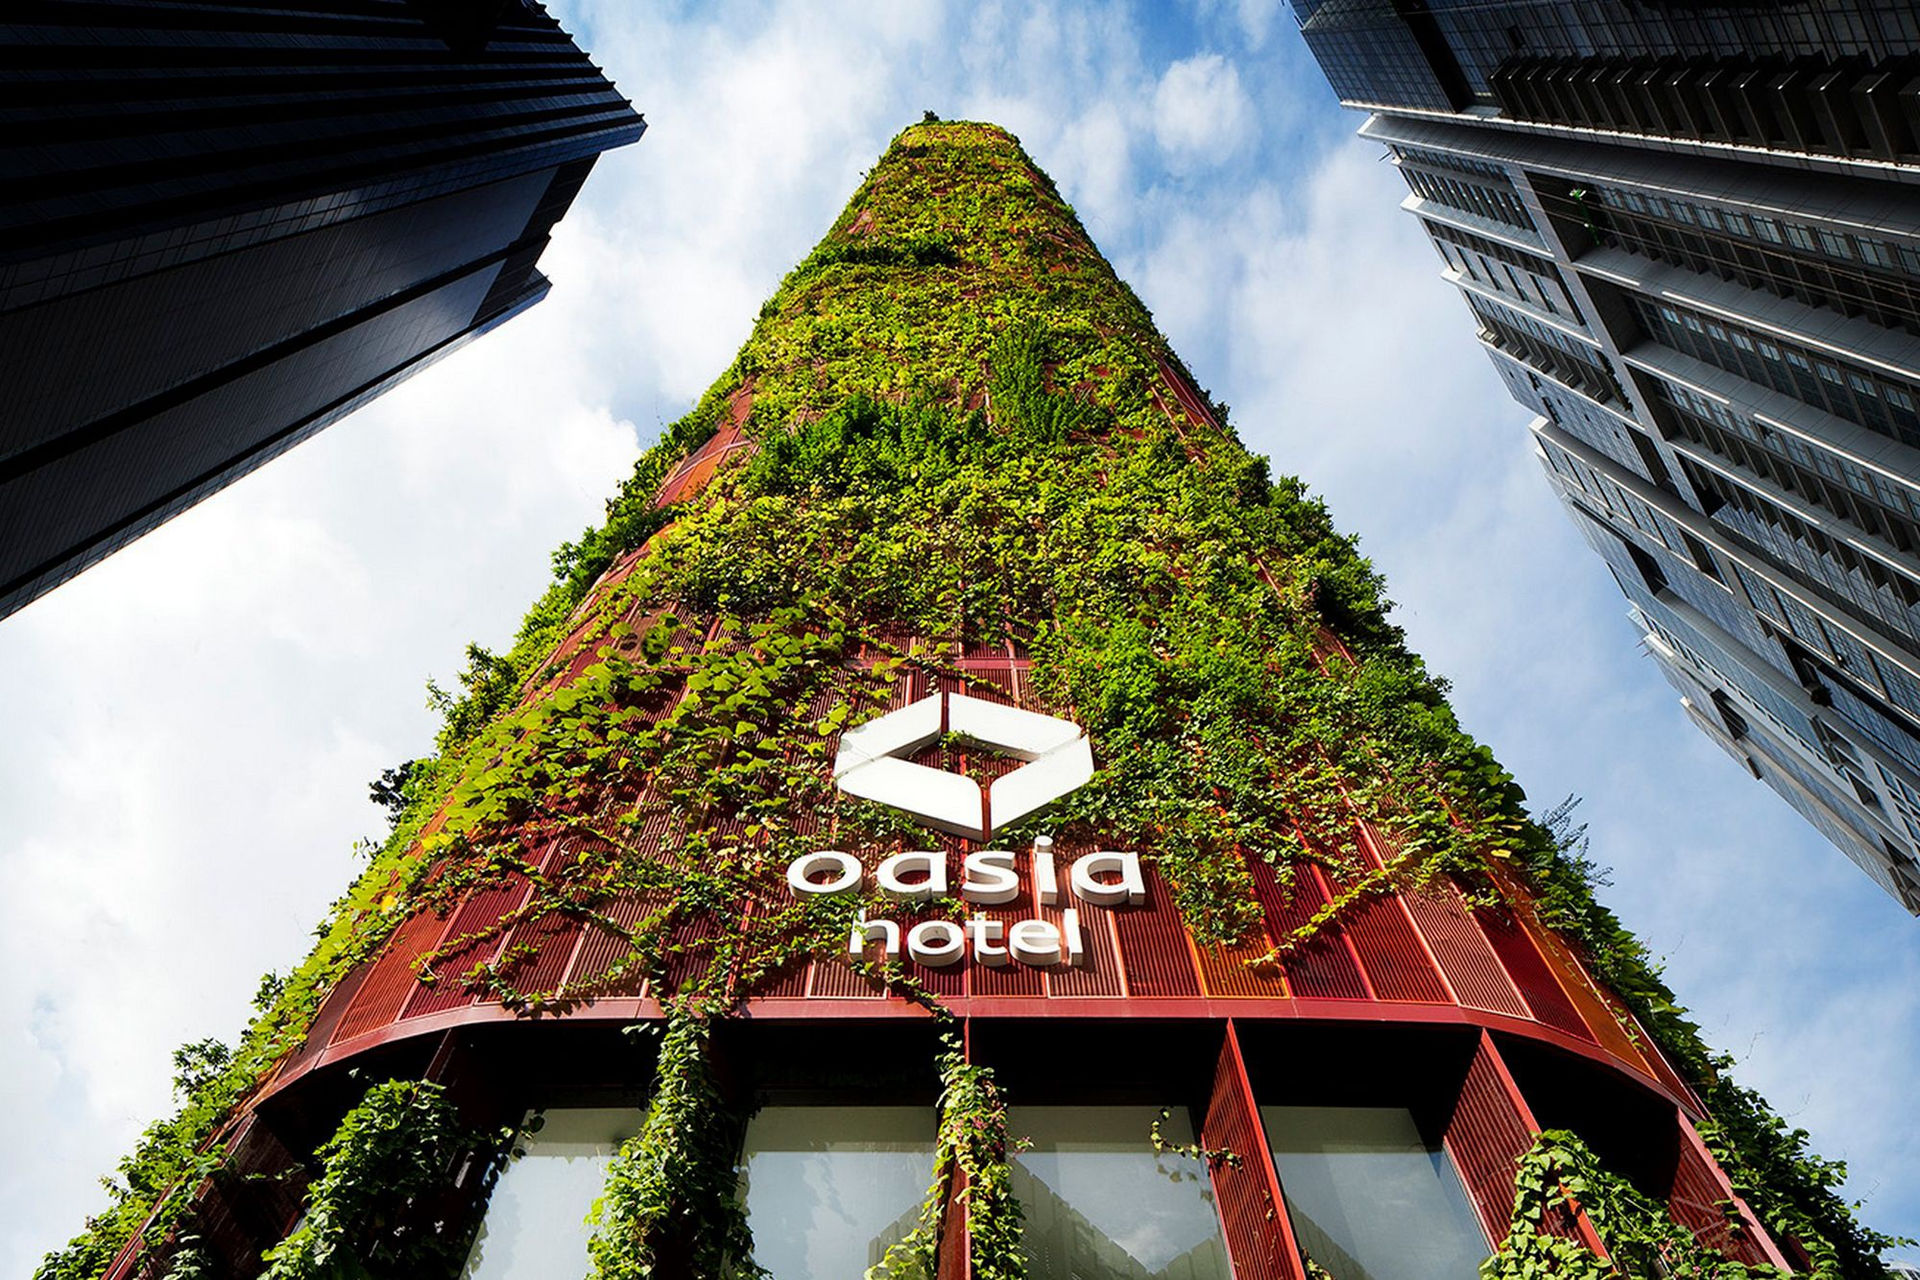 6 tòa nhà xanh ở Singapore được mệnh danh là kỳ quan kiến trúc - 1